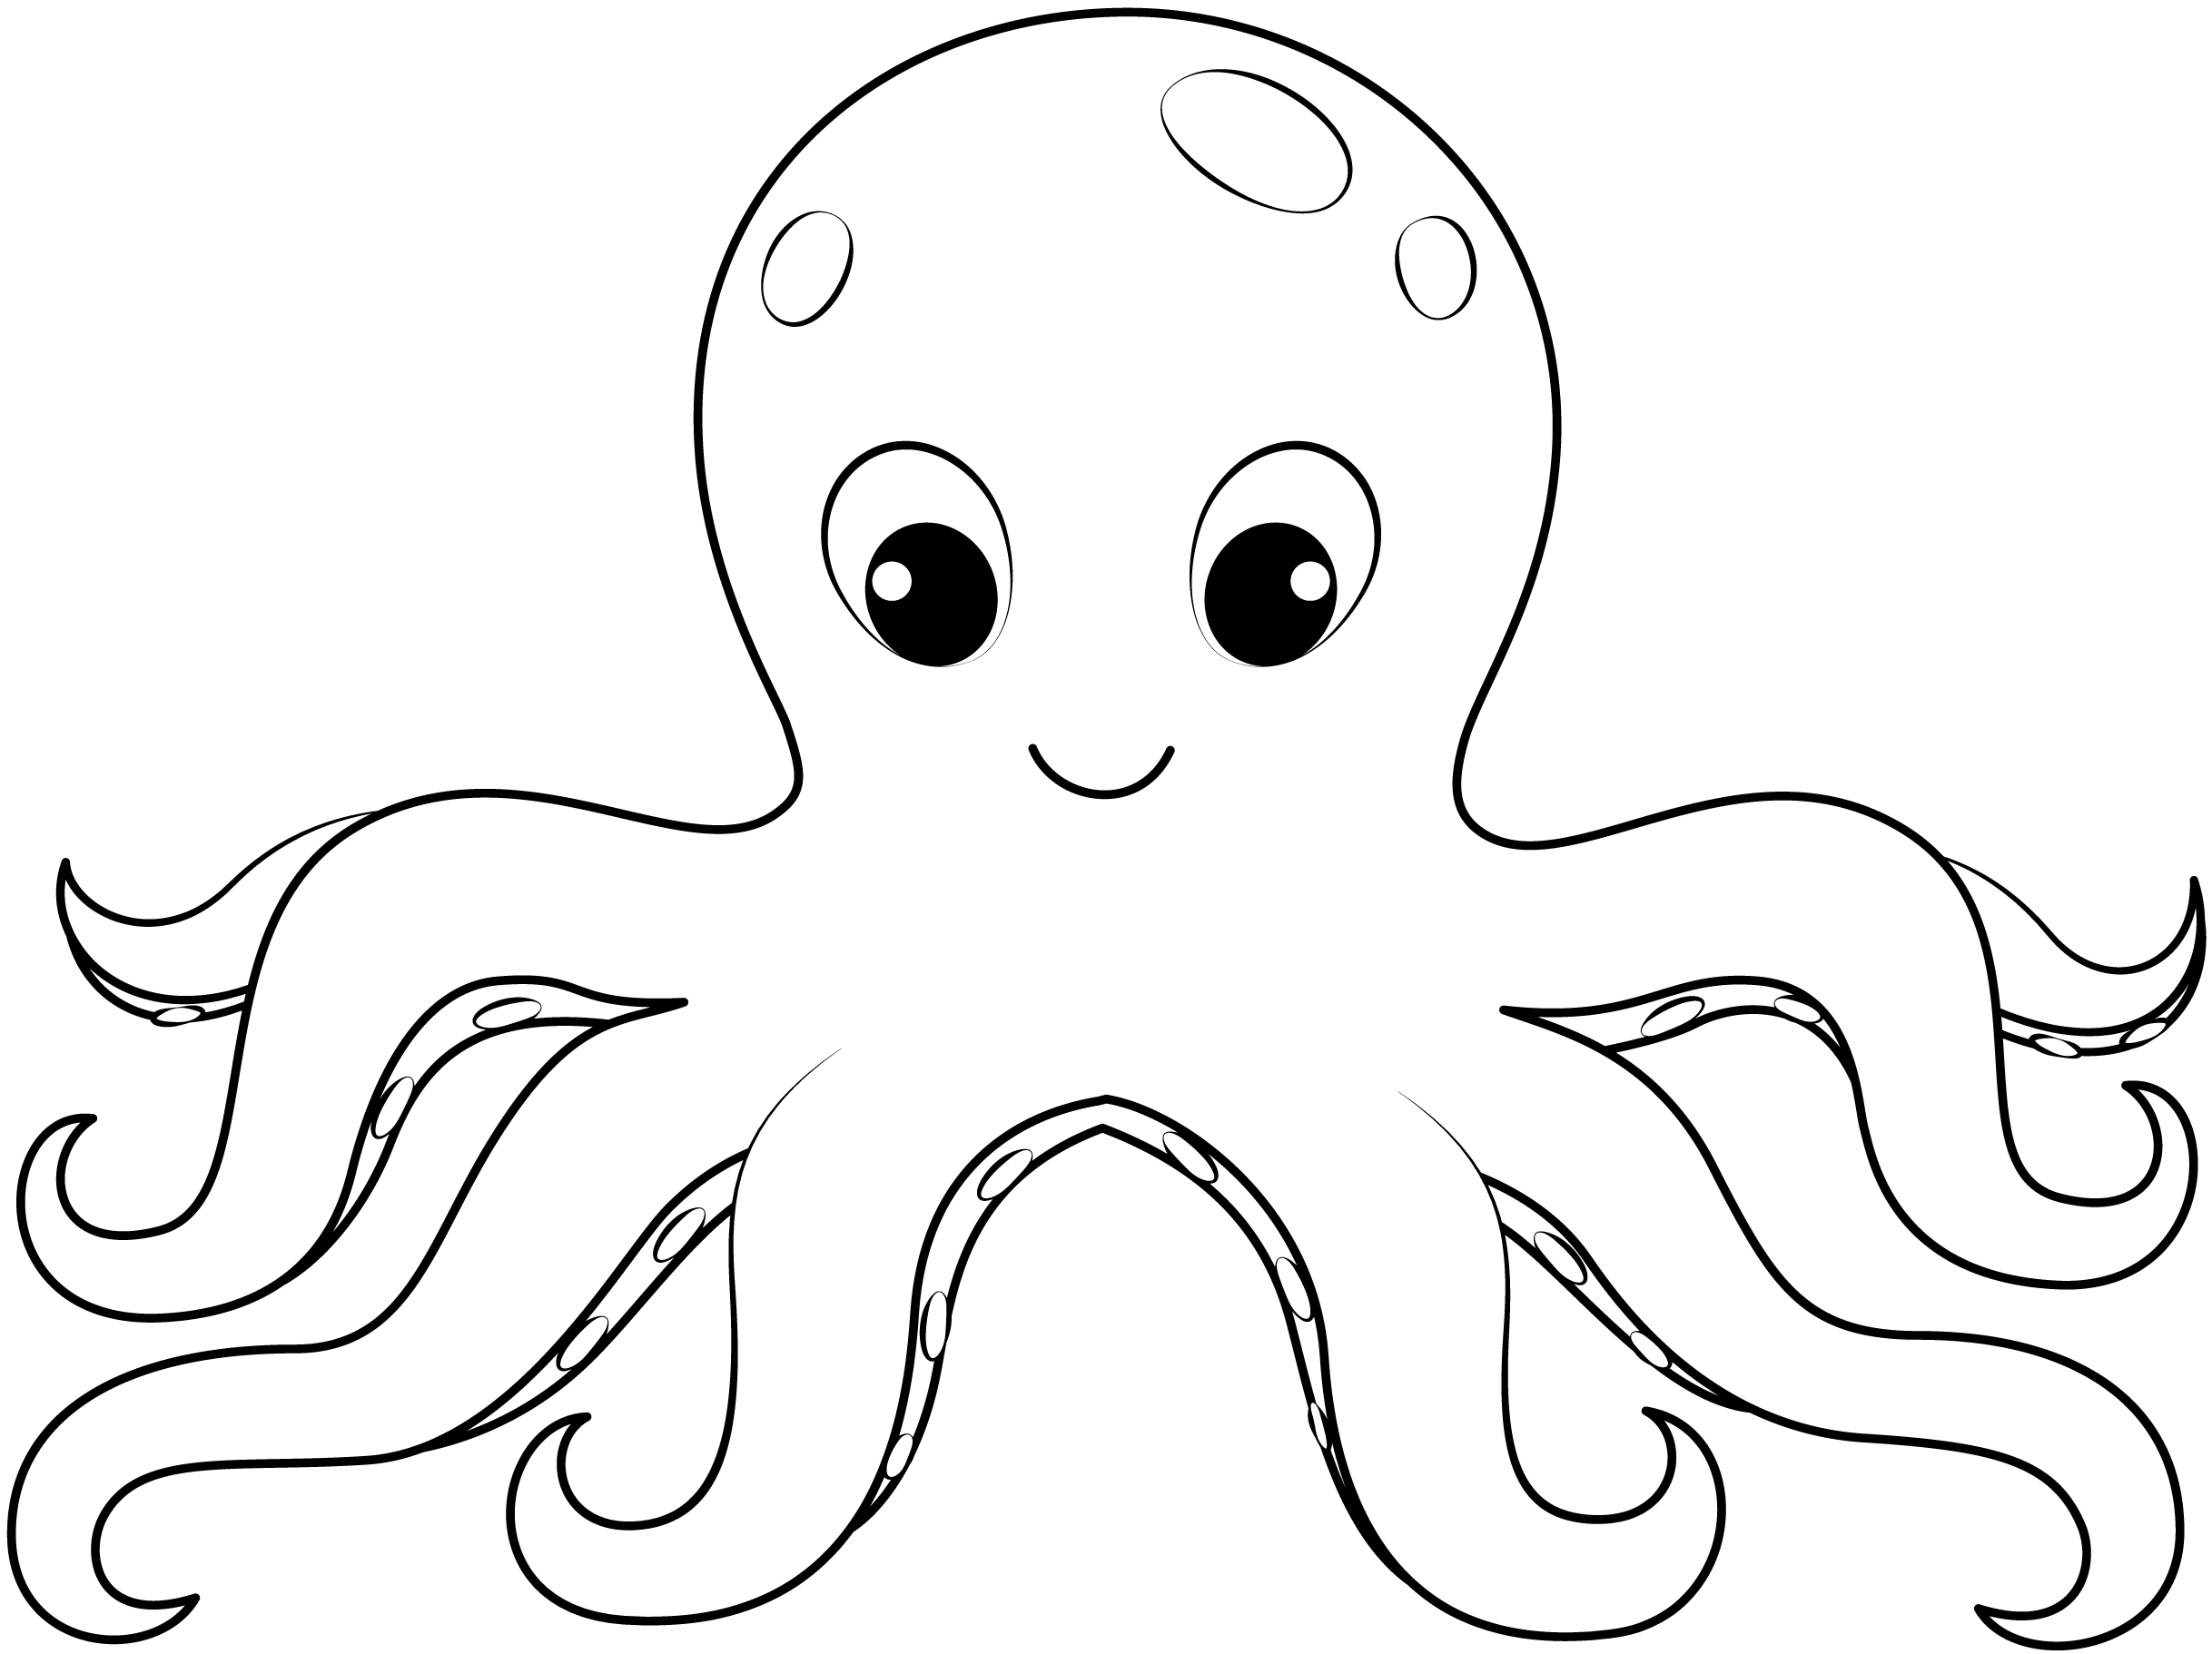 Free Printable Octopus Worksheets